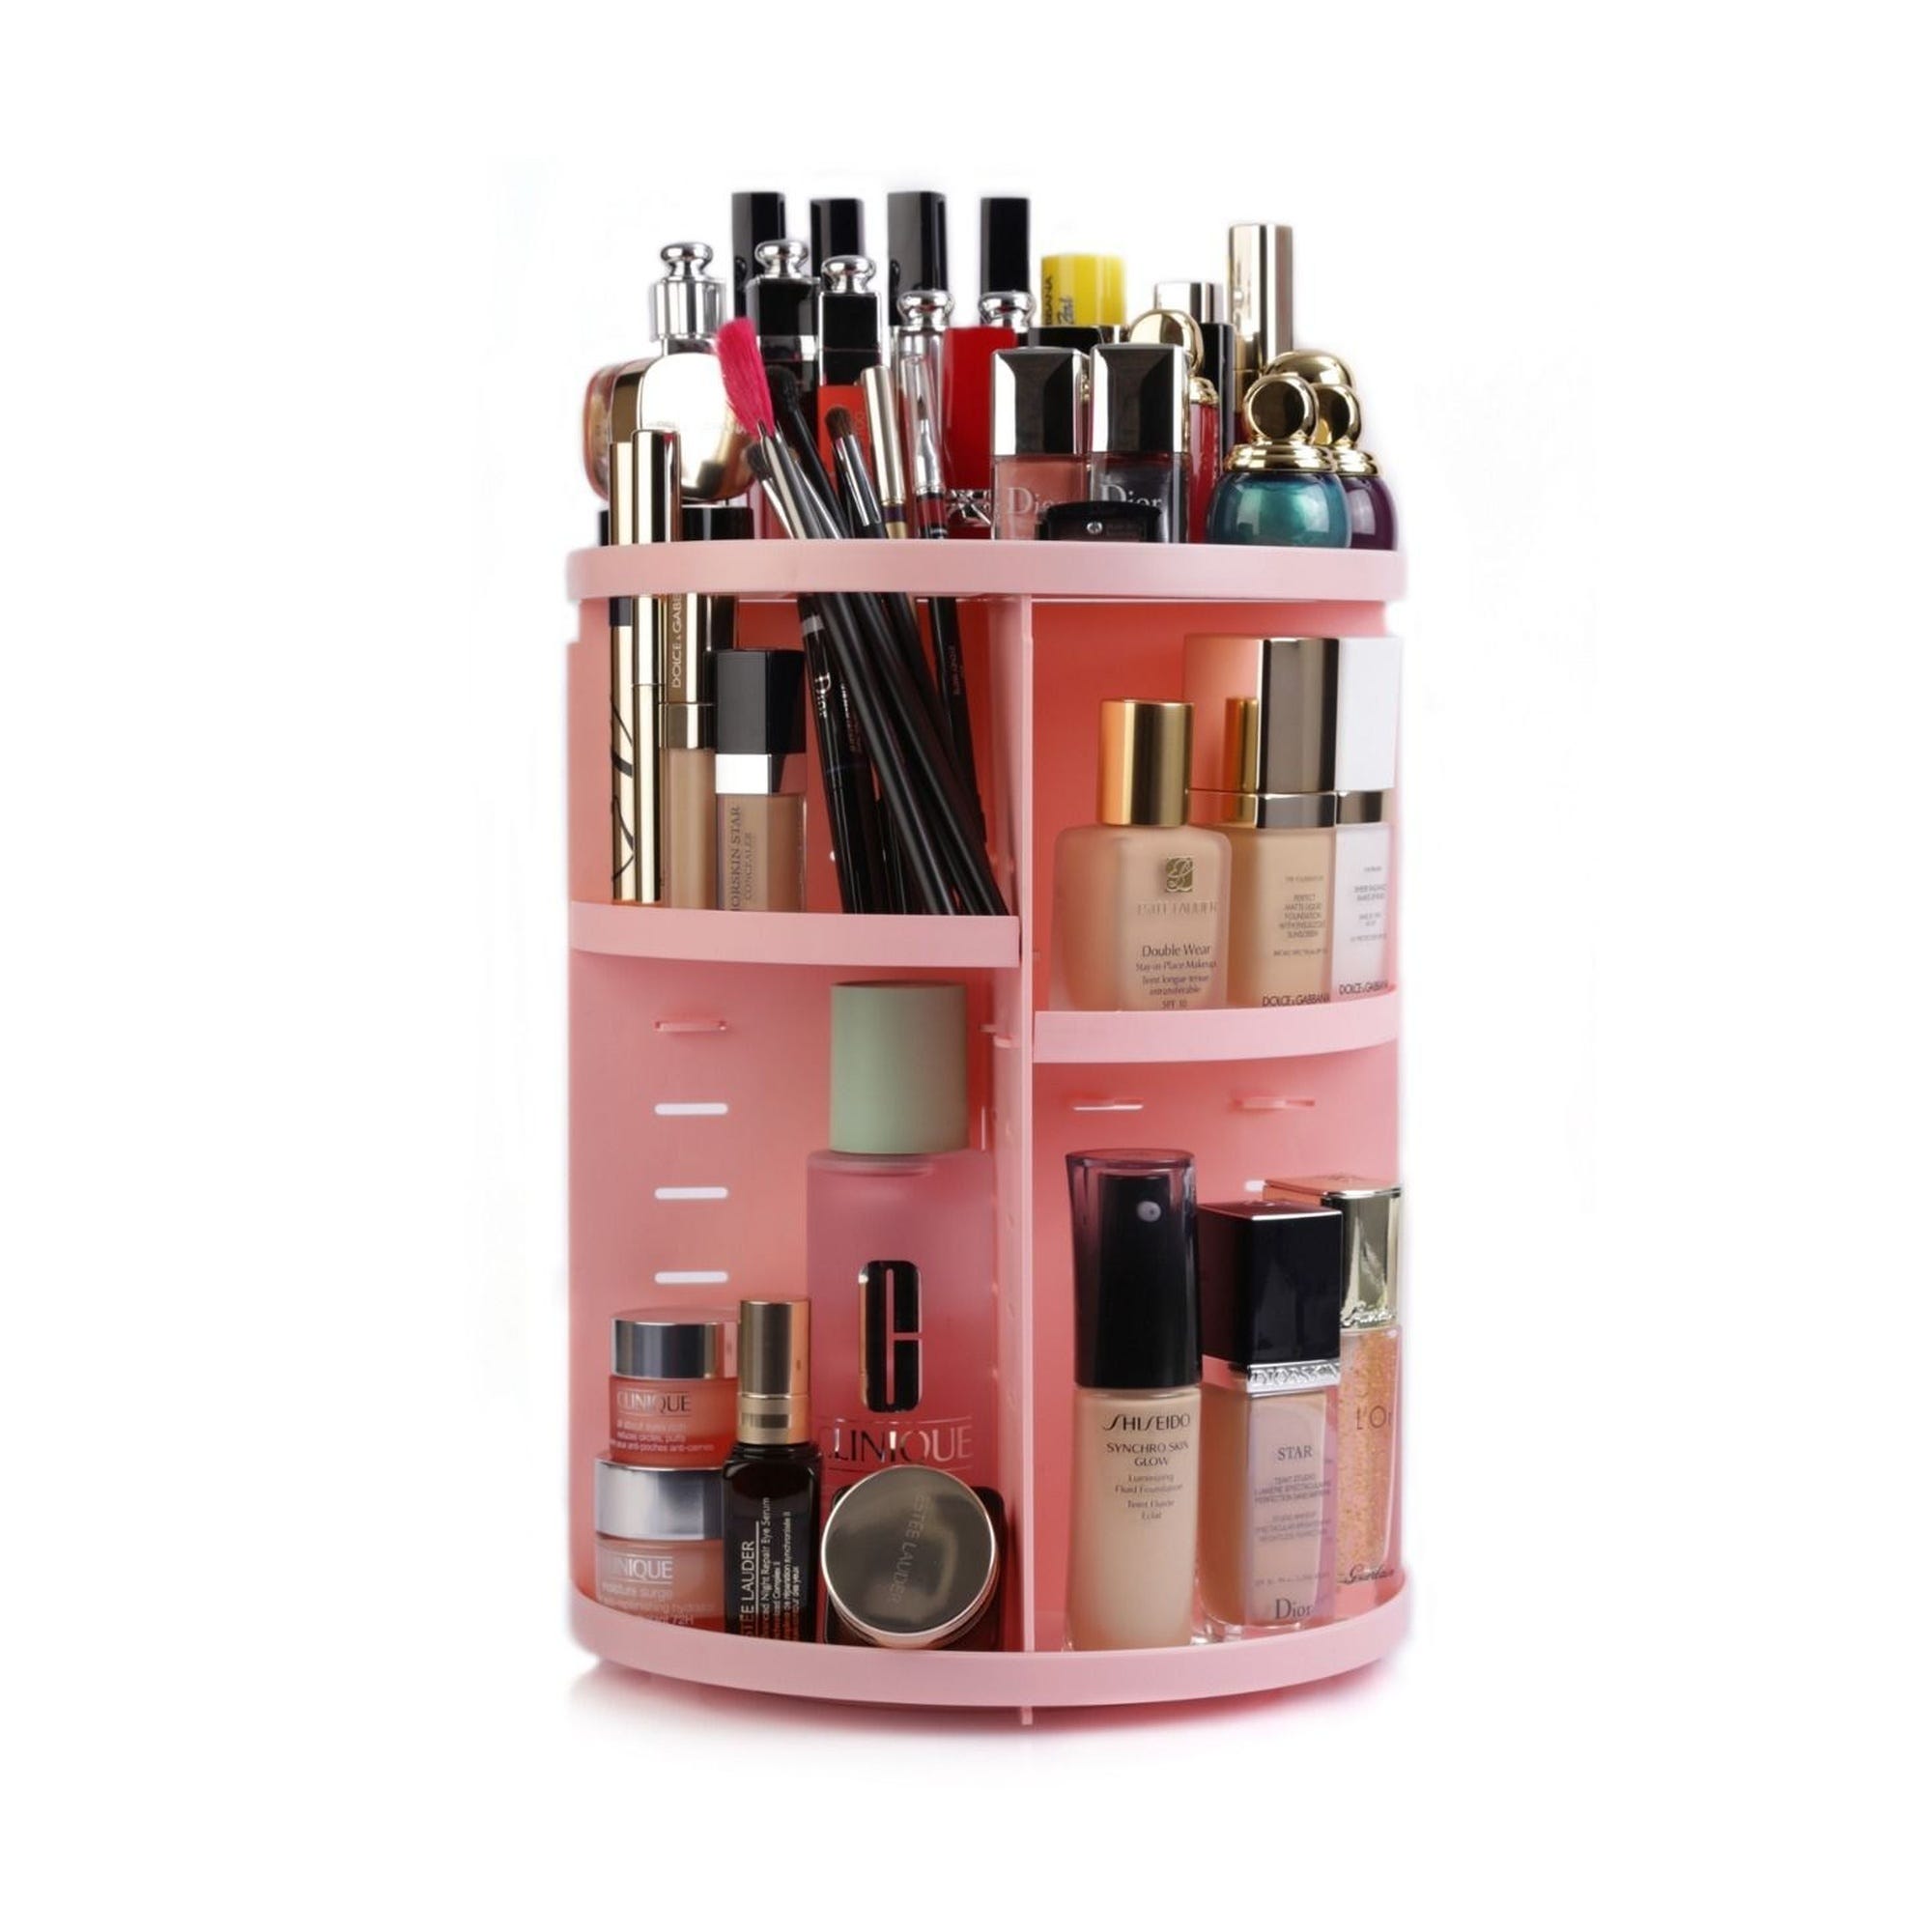 Torre Organizador De Maquillaje Giratorio 22cm T3209 Color Rosa